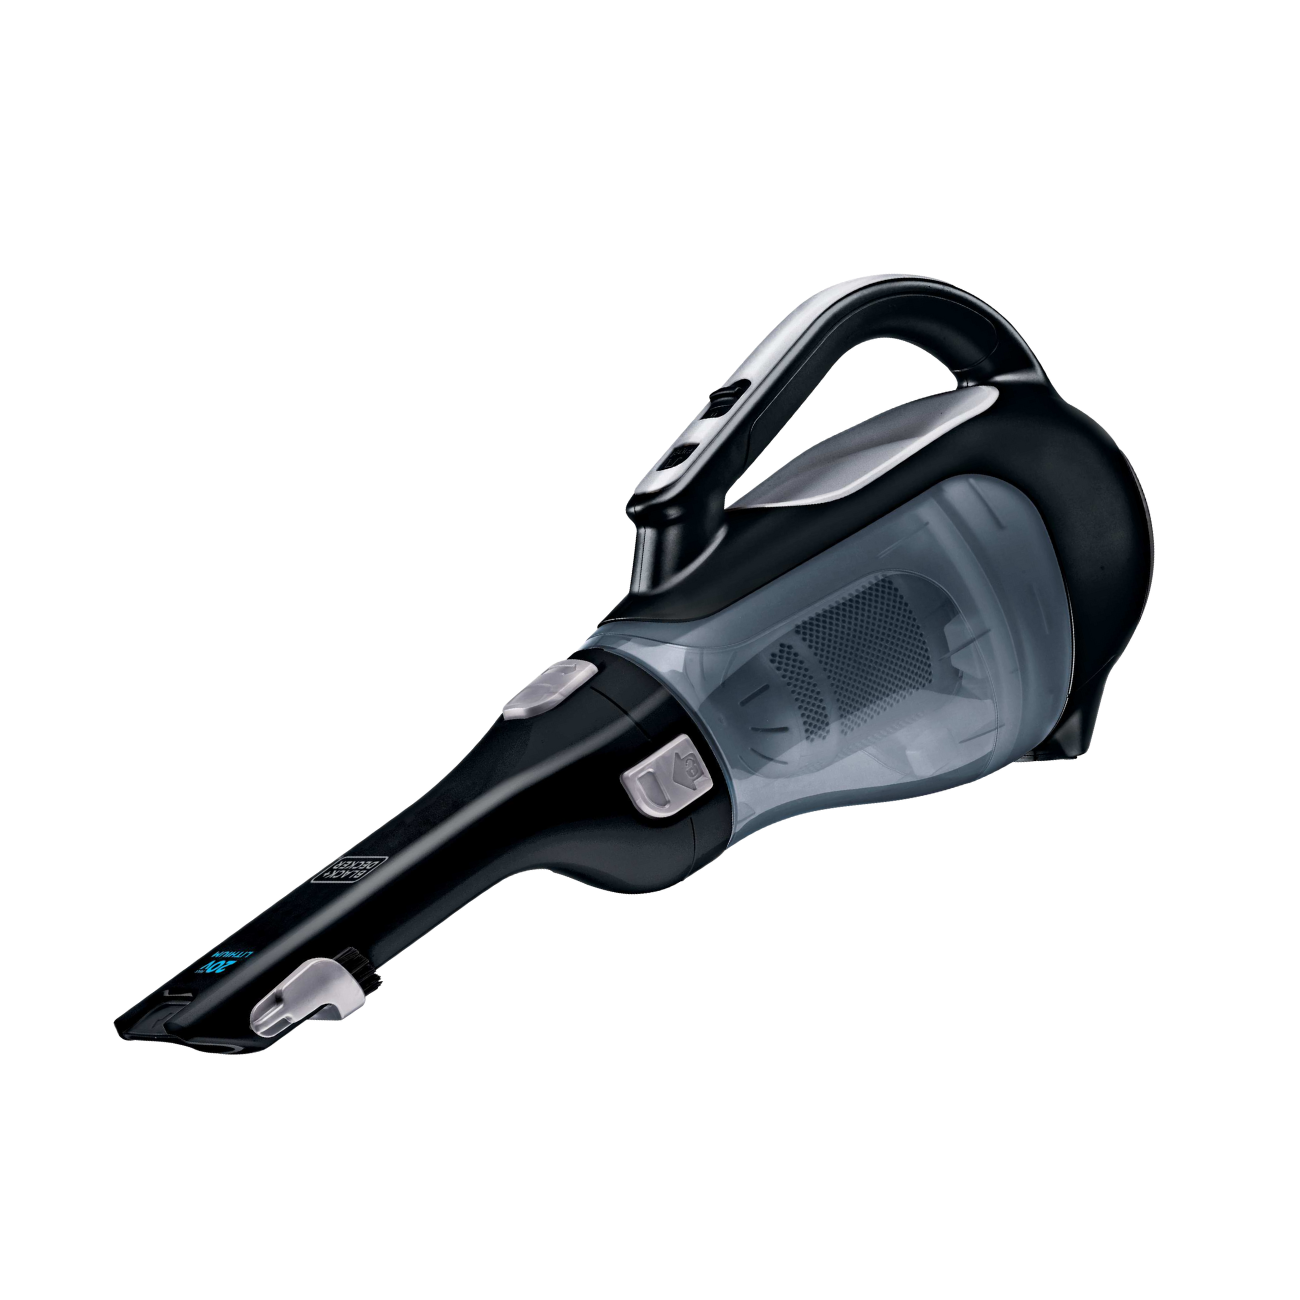 20V Max* Lithium Handheld Vacuum